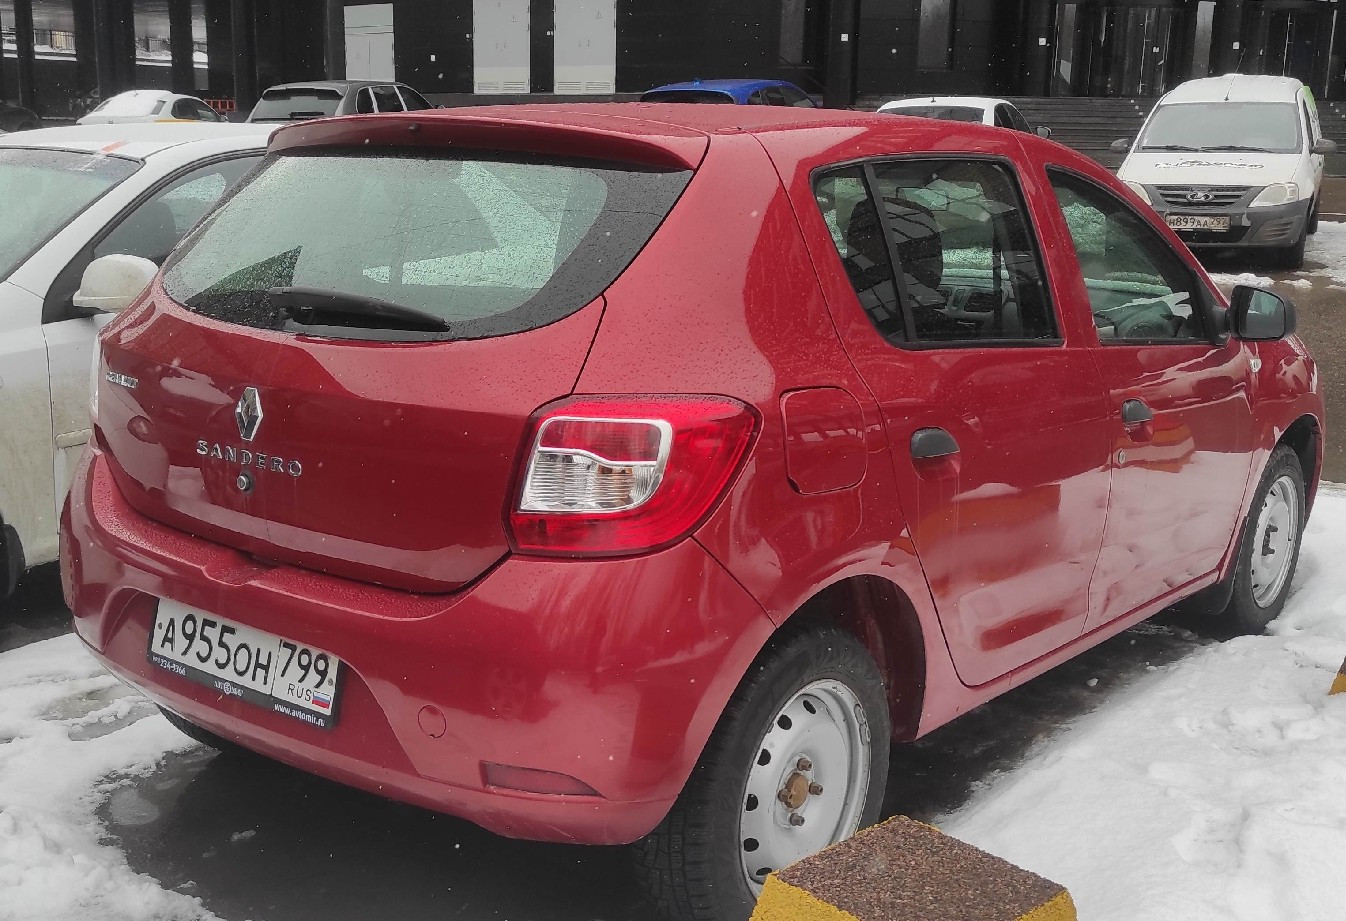 Аренда renault sandero эконом класса 2015 года в городе Москва Нагорная от 1520 руб./сутки, передний привод, двигатель: бензин, объем 1.2 литра, ОСАГО (Мультидрайв), без водителя, недорого, вид 3 - RentRide